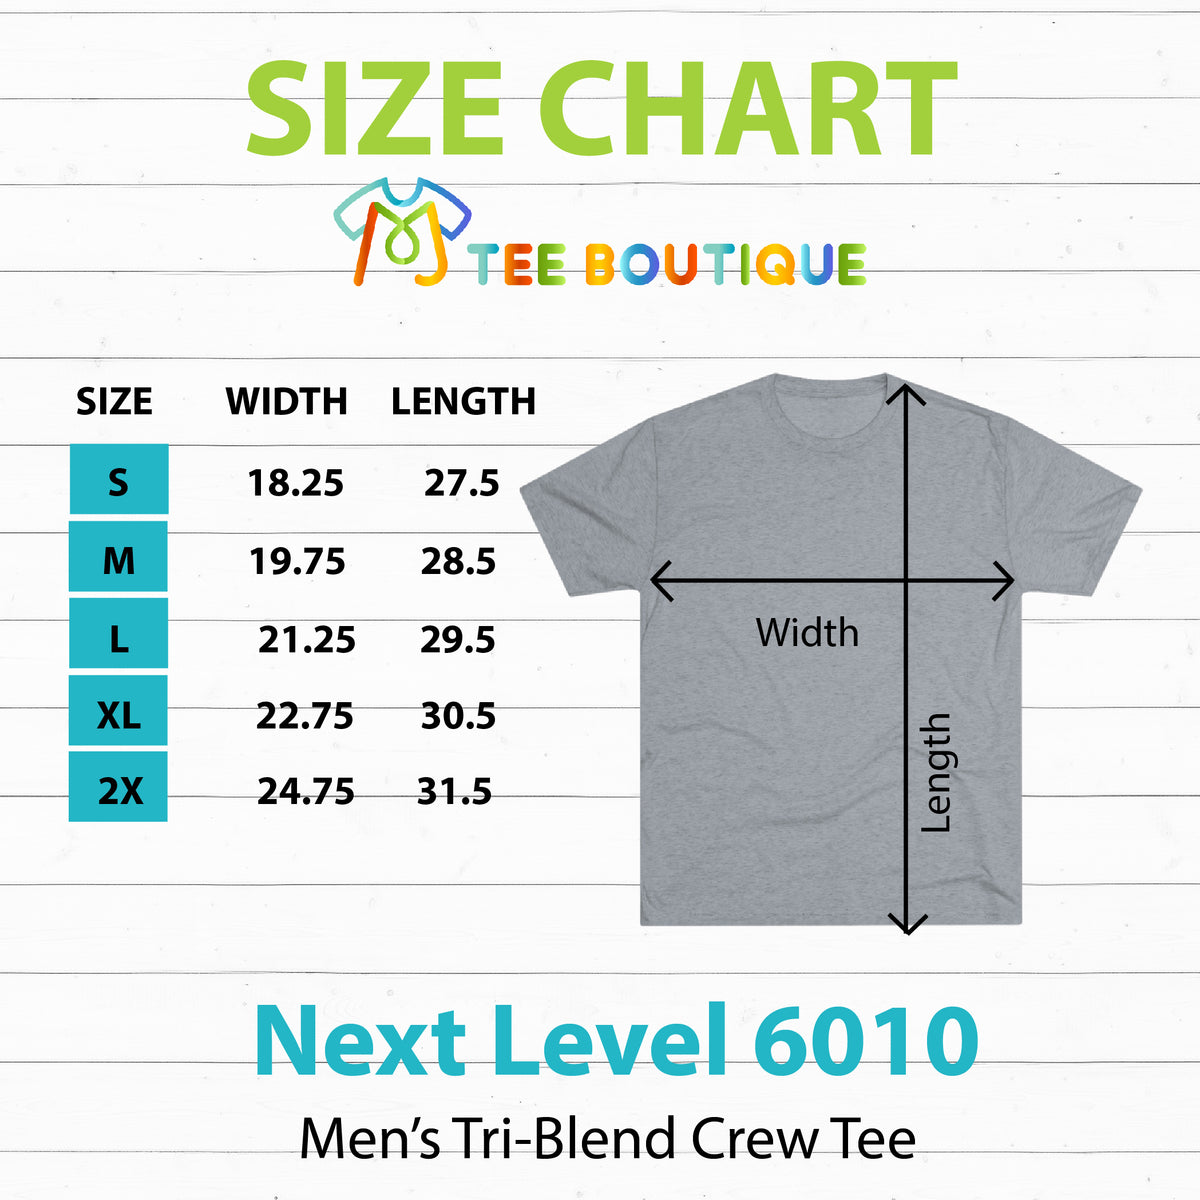 Procrastiplanner Funny Entrepreneur Shirt | Planning to Prosper Gift | Men's Tri-blend T-shirt